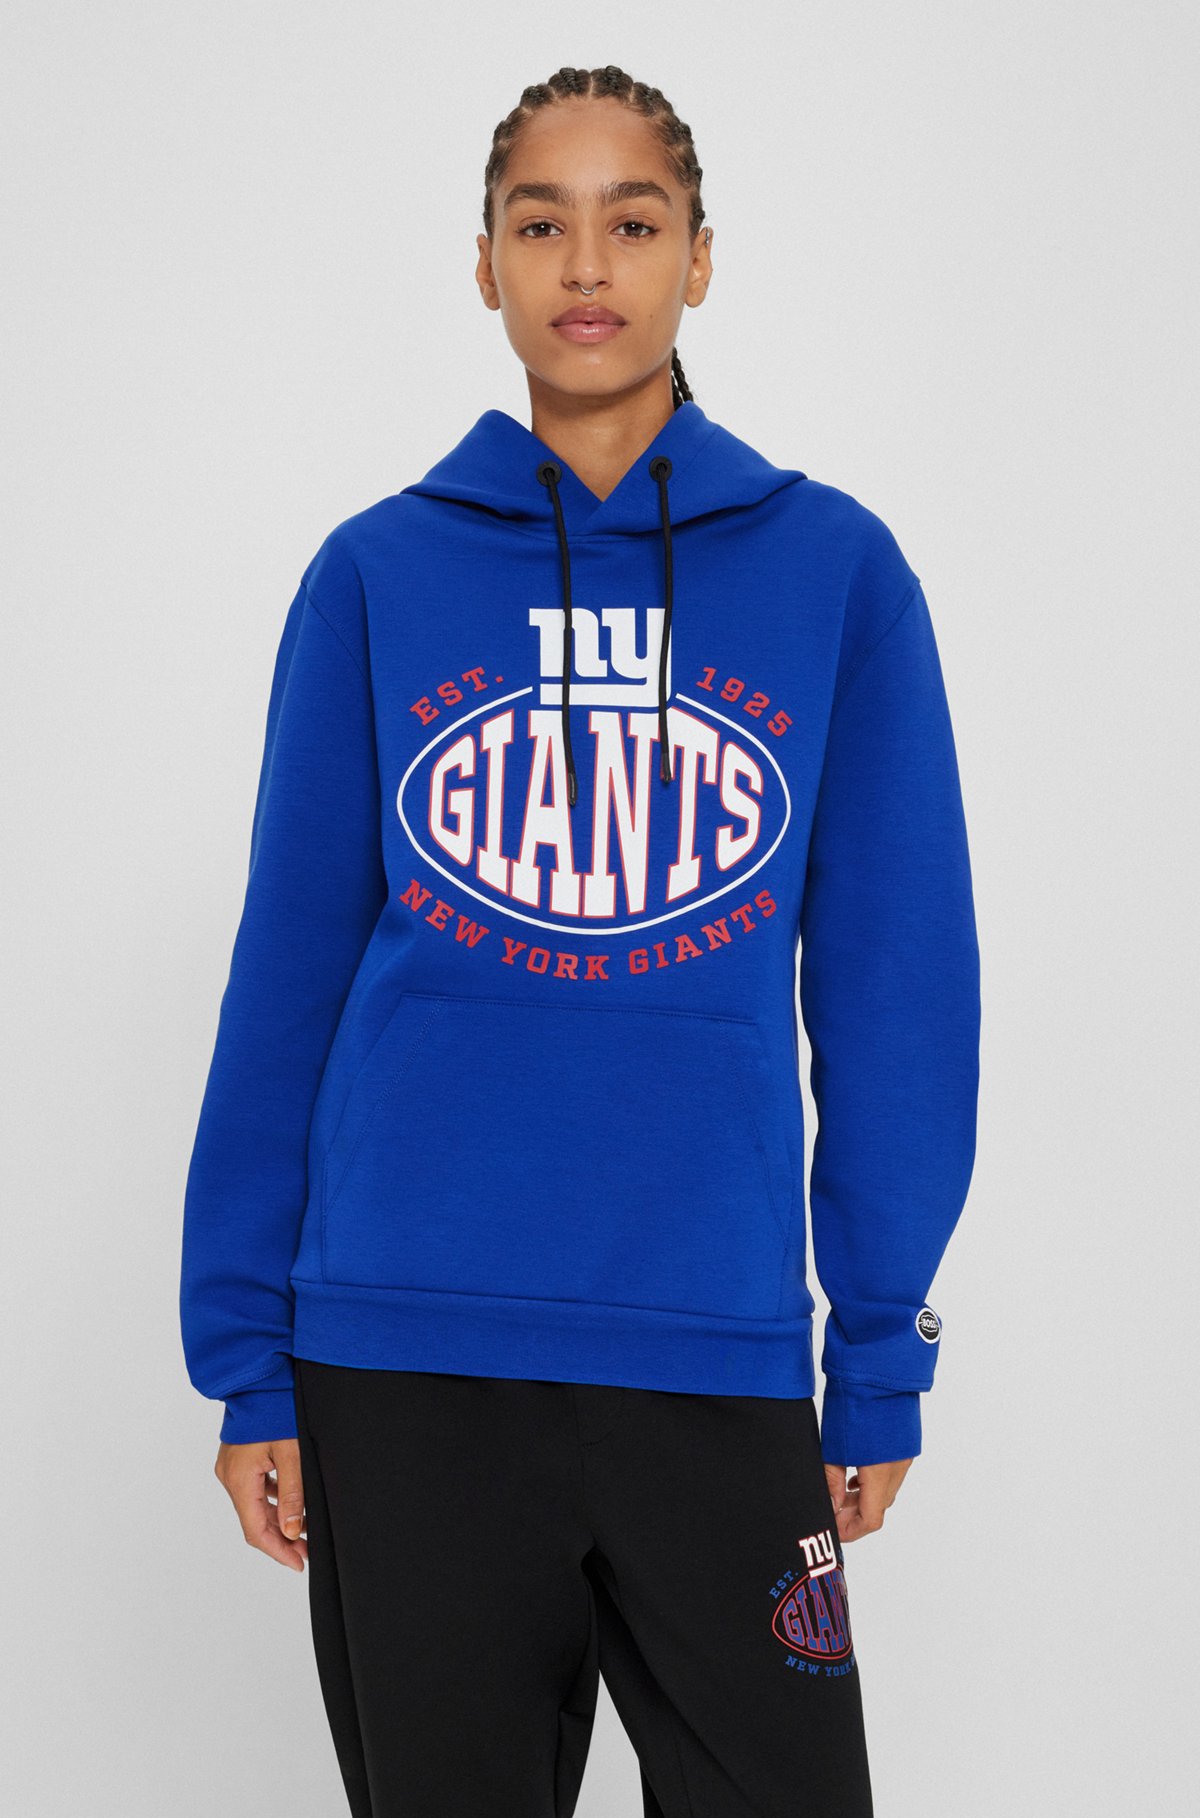  Sweat à capuche BOSS x NFL en coton mélangé avec logo du partenariat, Giants